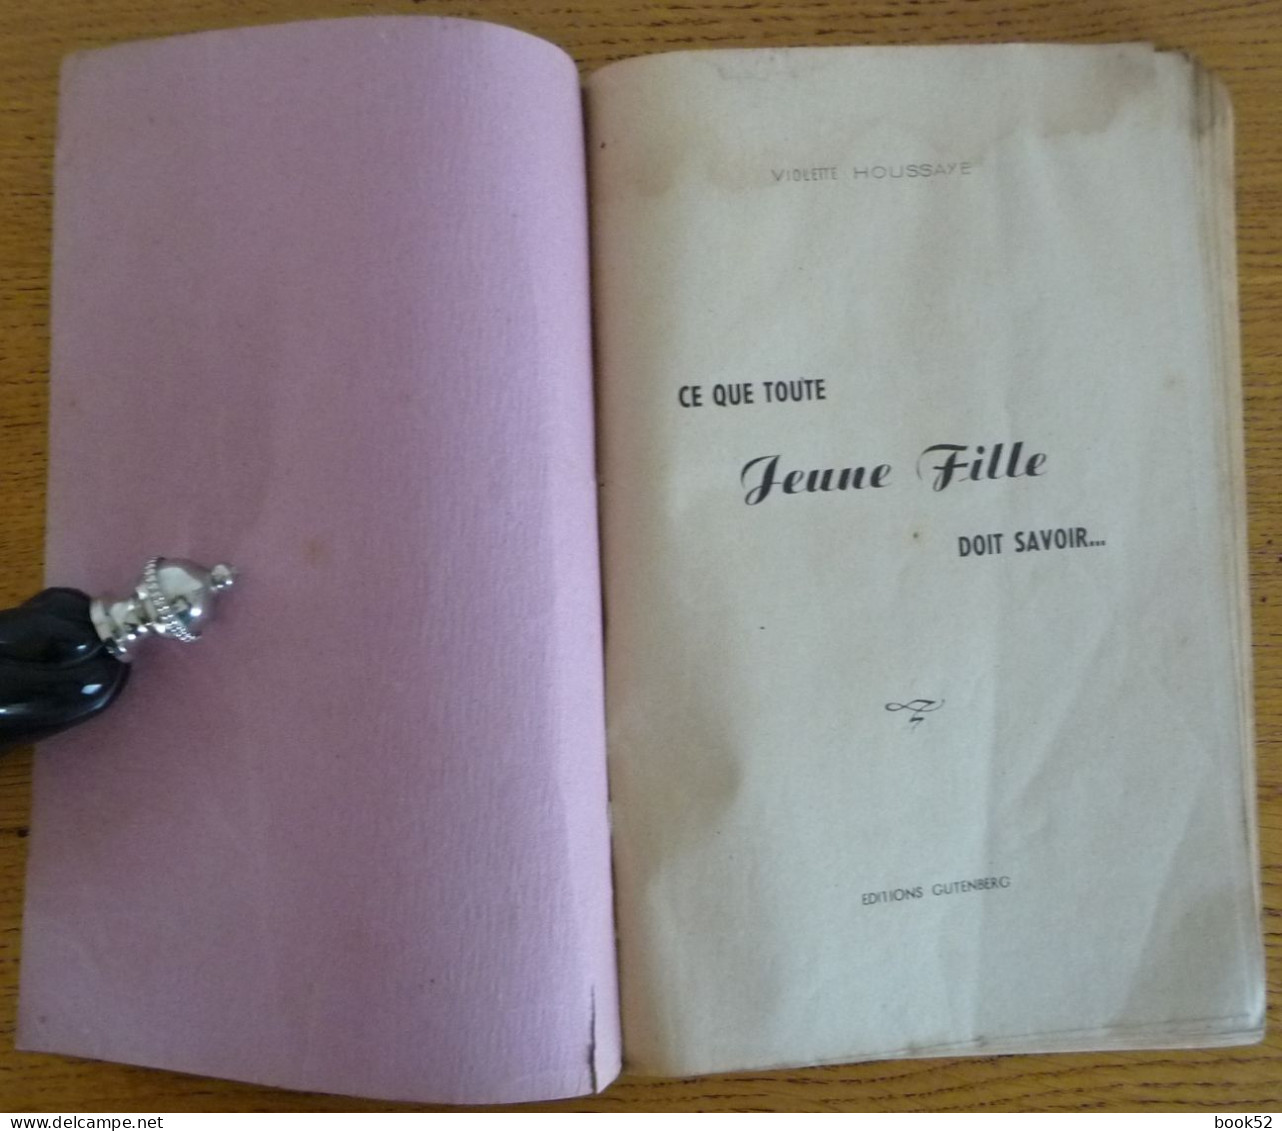 Ce Que Toute JEUNE FILLE Doit SAVOIR... Par Violette Houssaye (1944) - Unclassified